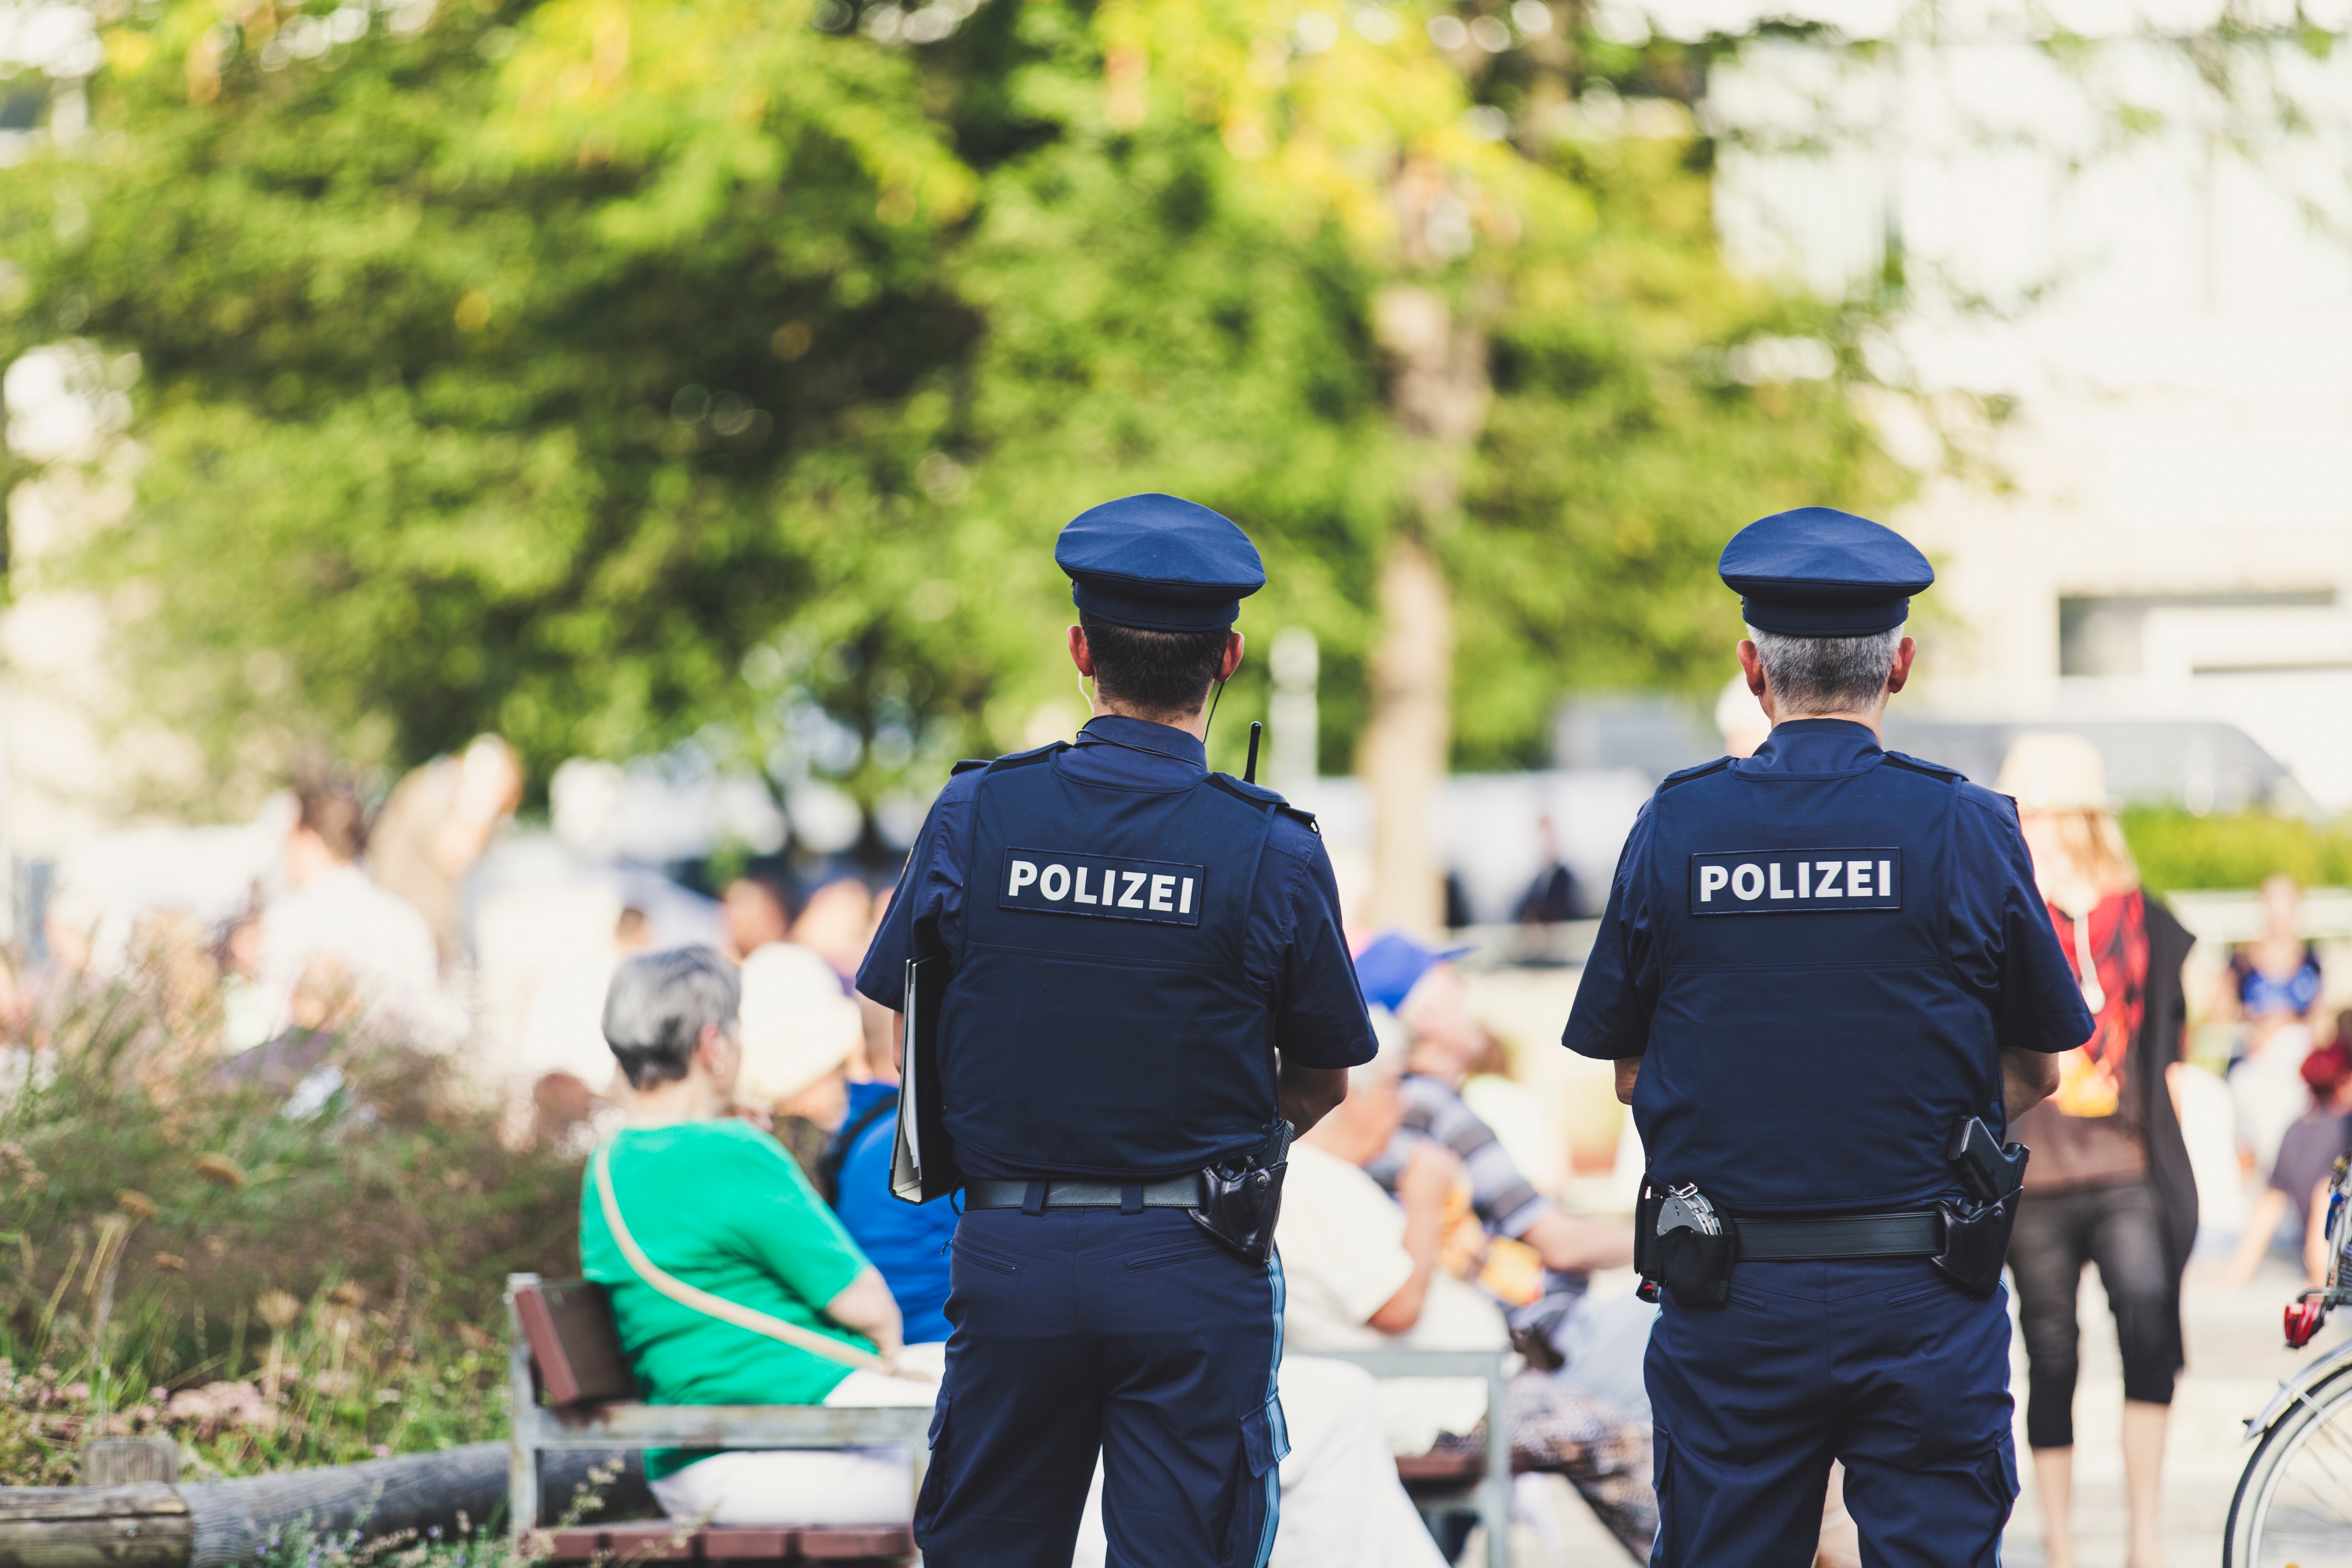 Polizei ermittelt gegen Polizei – ist das ein gutes Prinzip oder braucht es unabhängige Polizeibeschwerdestellen?